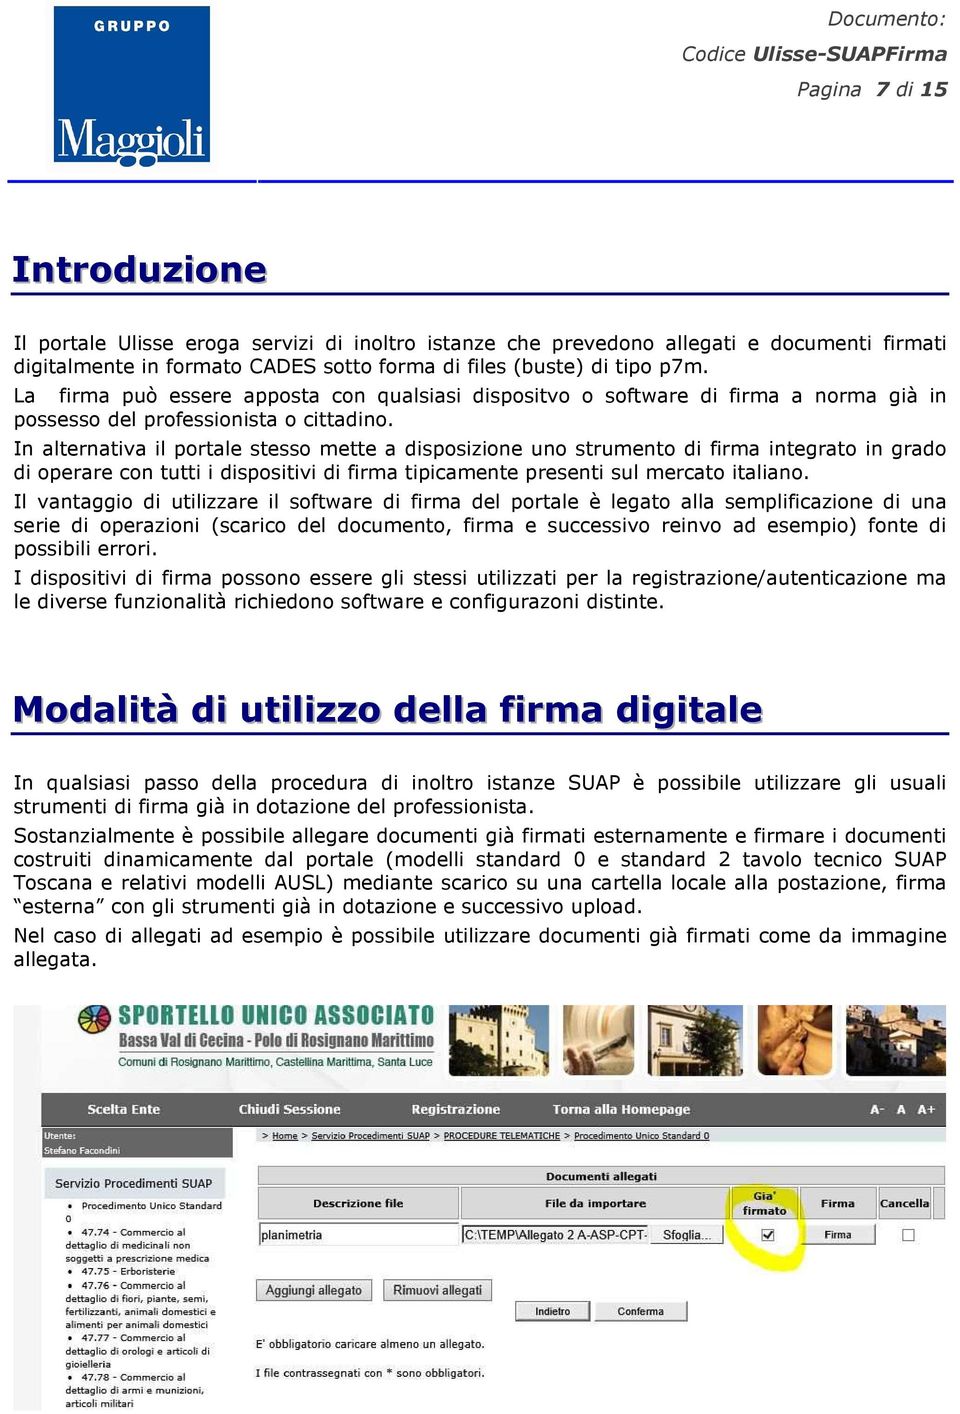 In alternativa il portale stesso mette a disposizione uno strumento di firma integrato in grado di operare con tutti i dispositivi di firma tipicamente presenti sul mercato italiano.